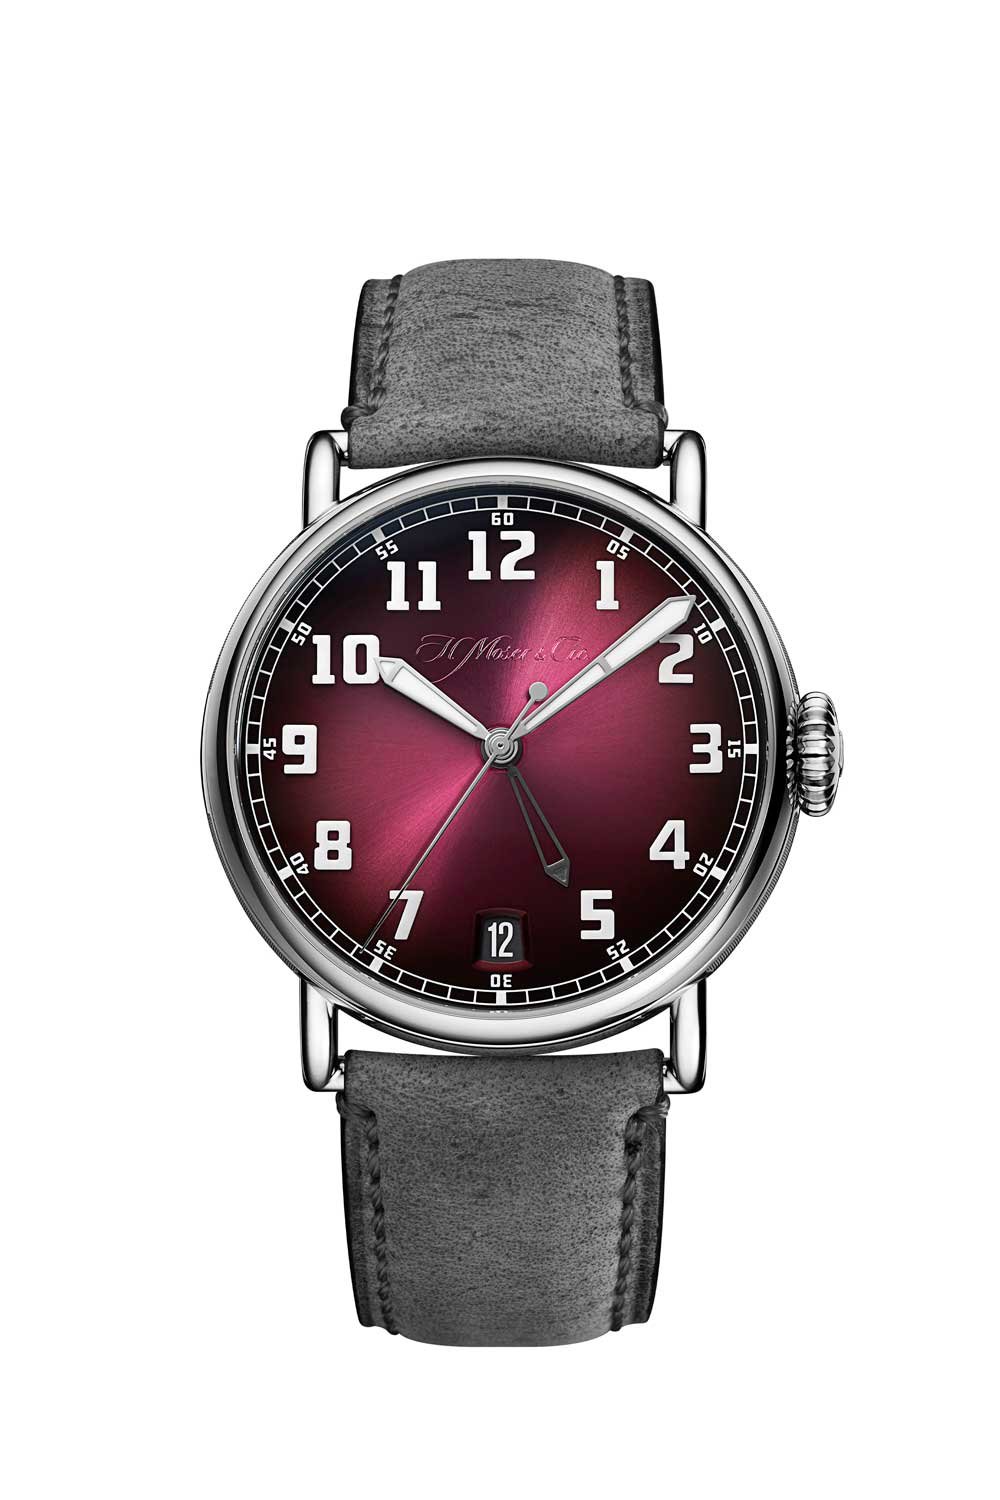 Chiếc đồng hồ thời gian Kép của H. Moser & Cie